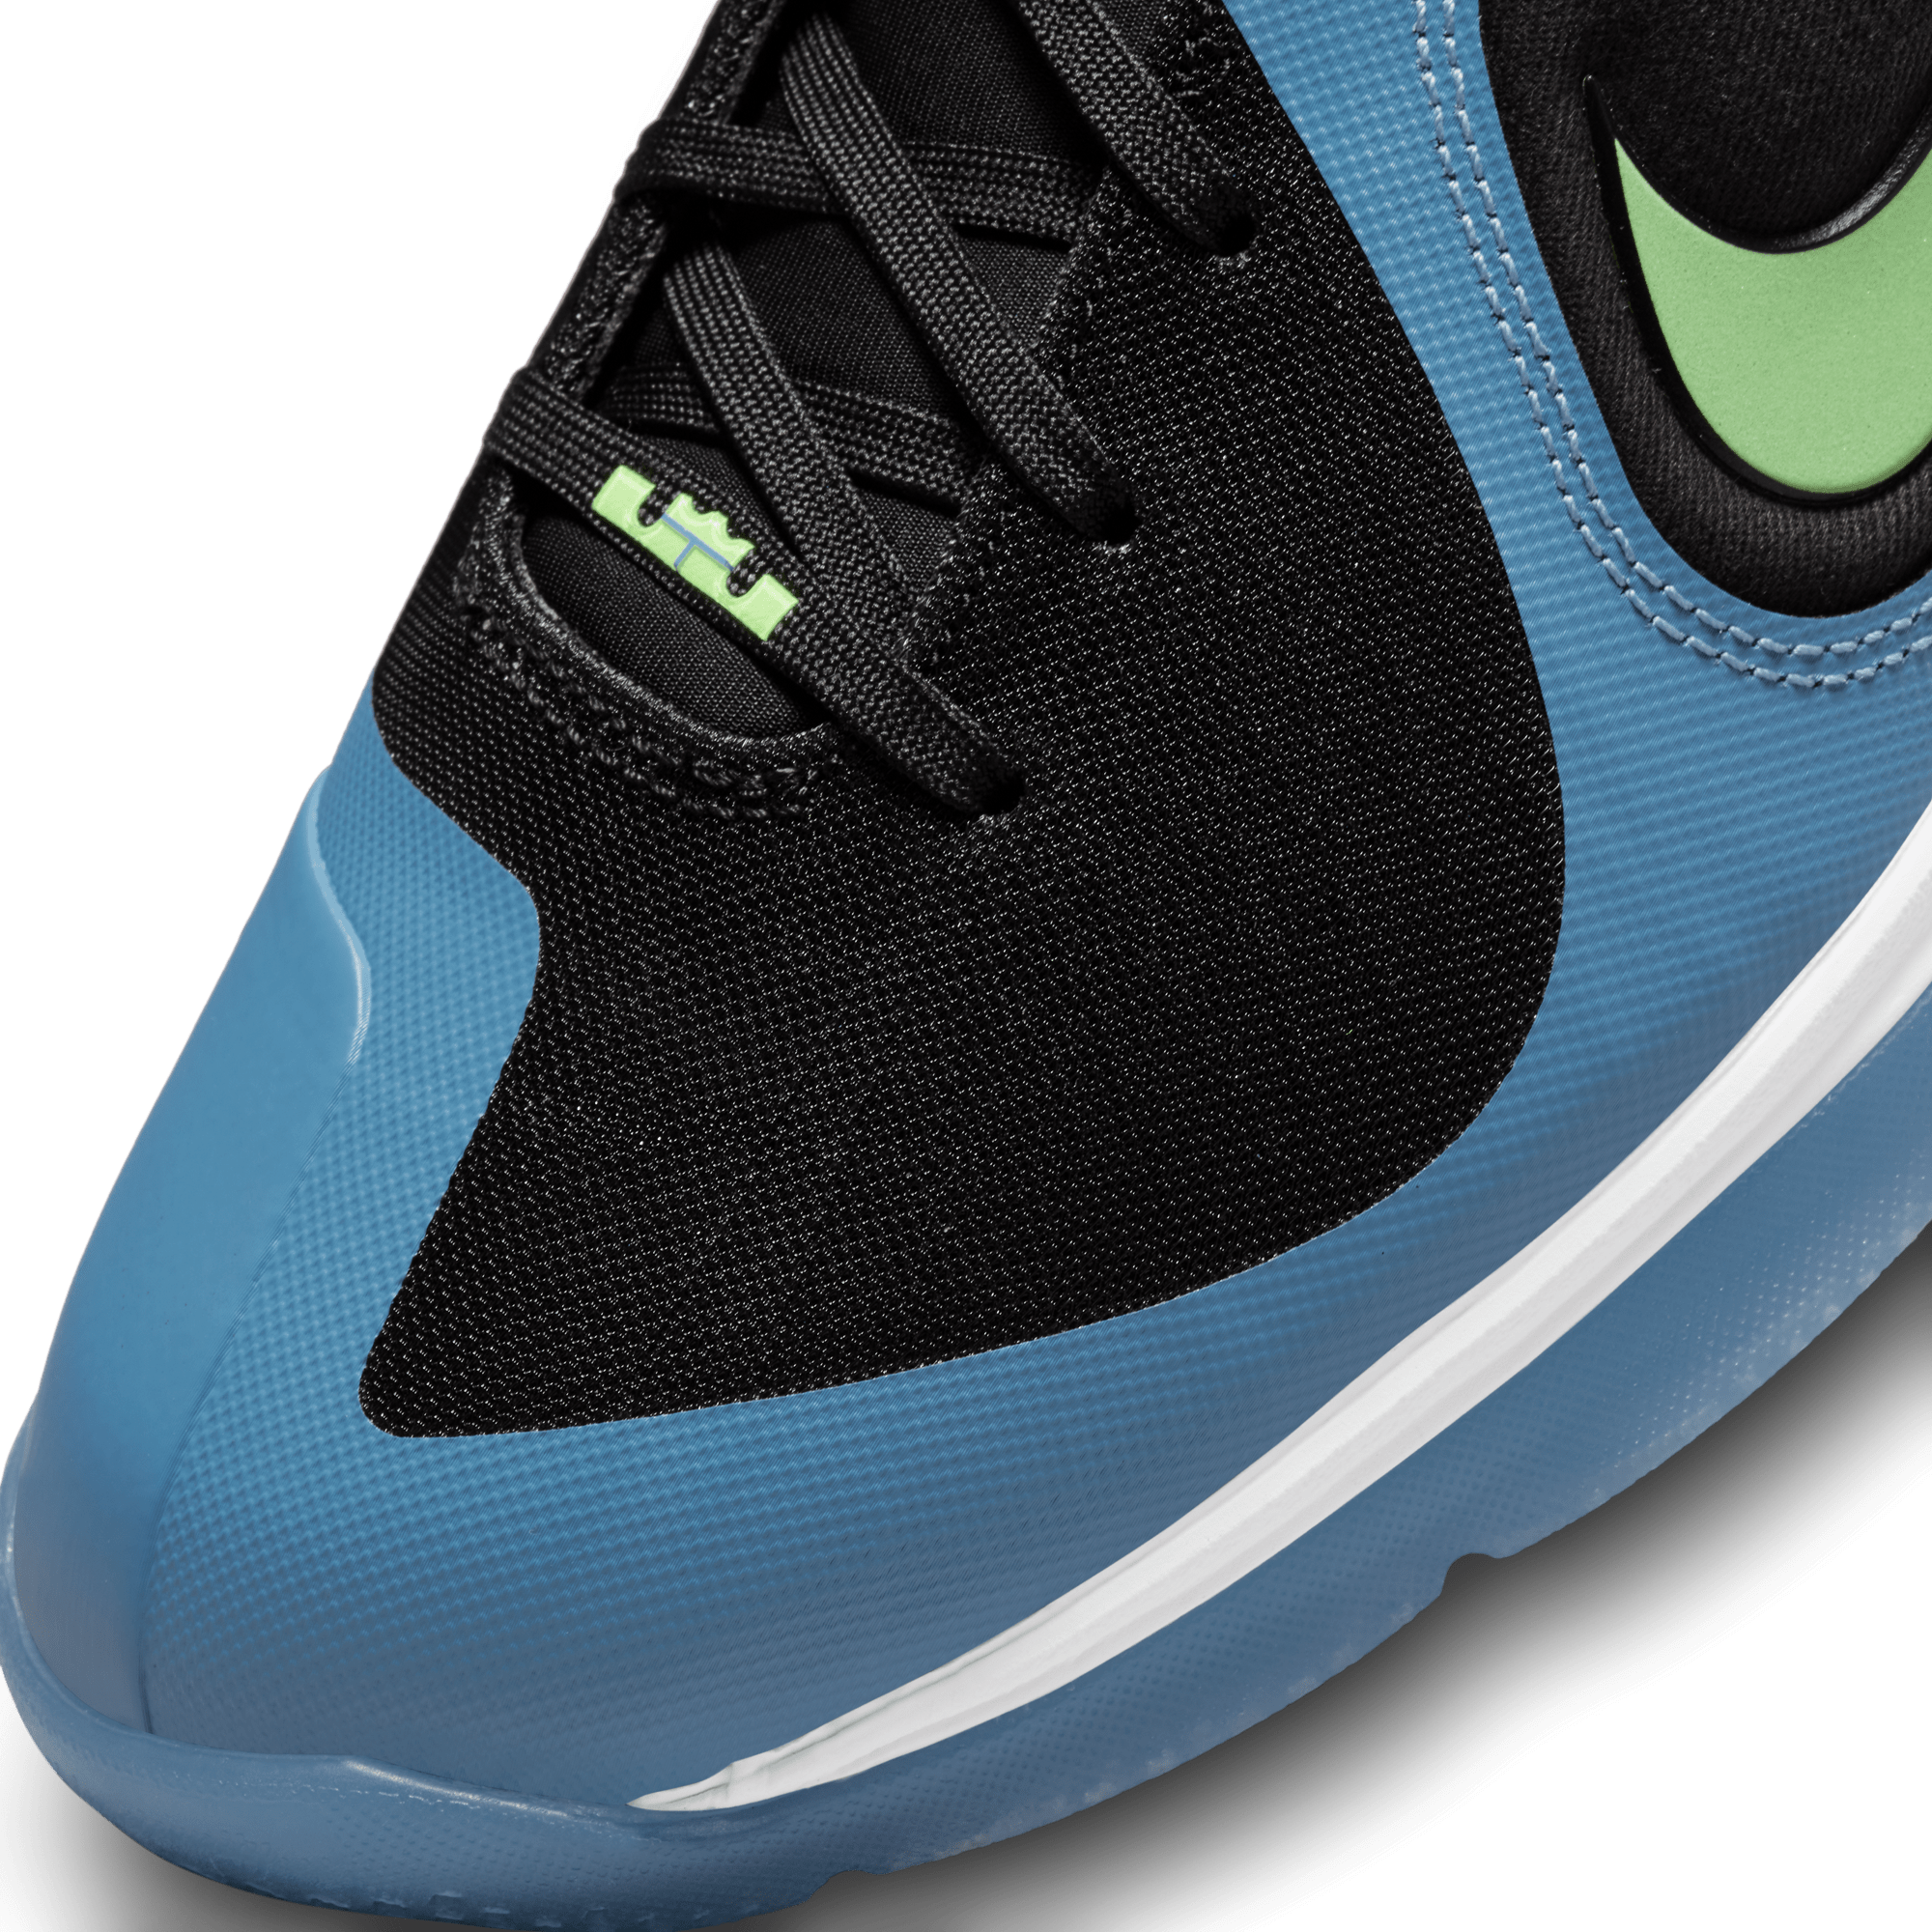 Nike Nike LeBron IX - Men's